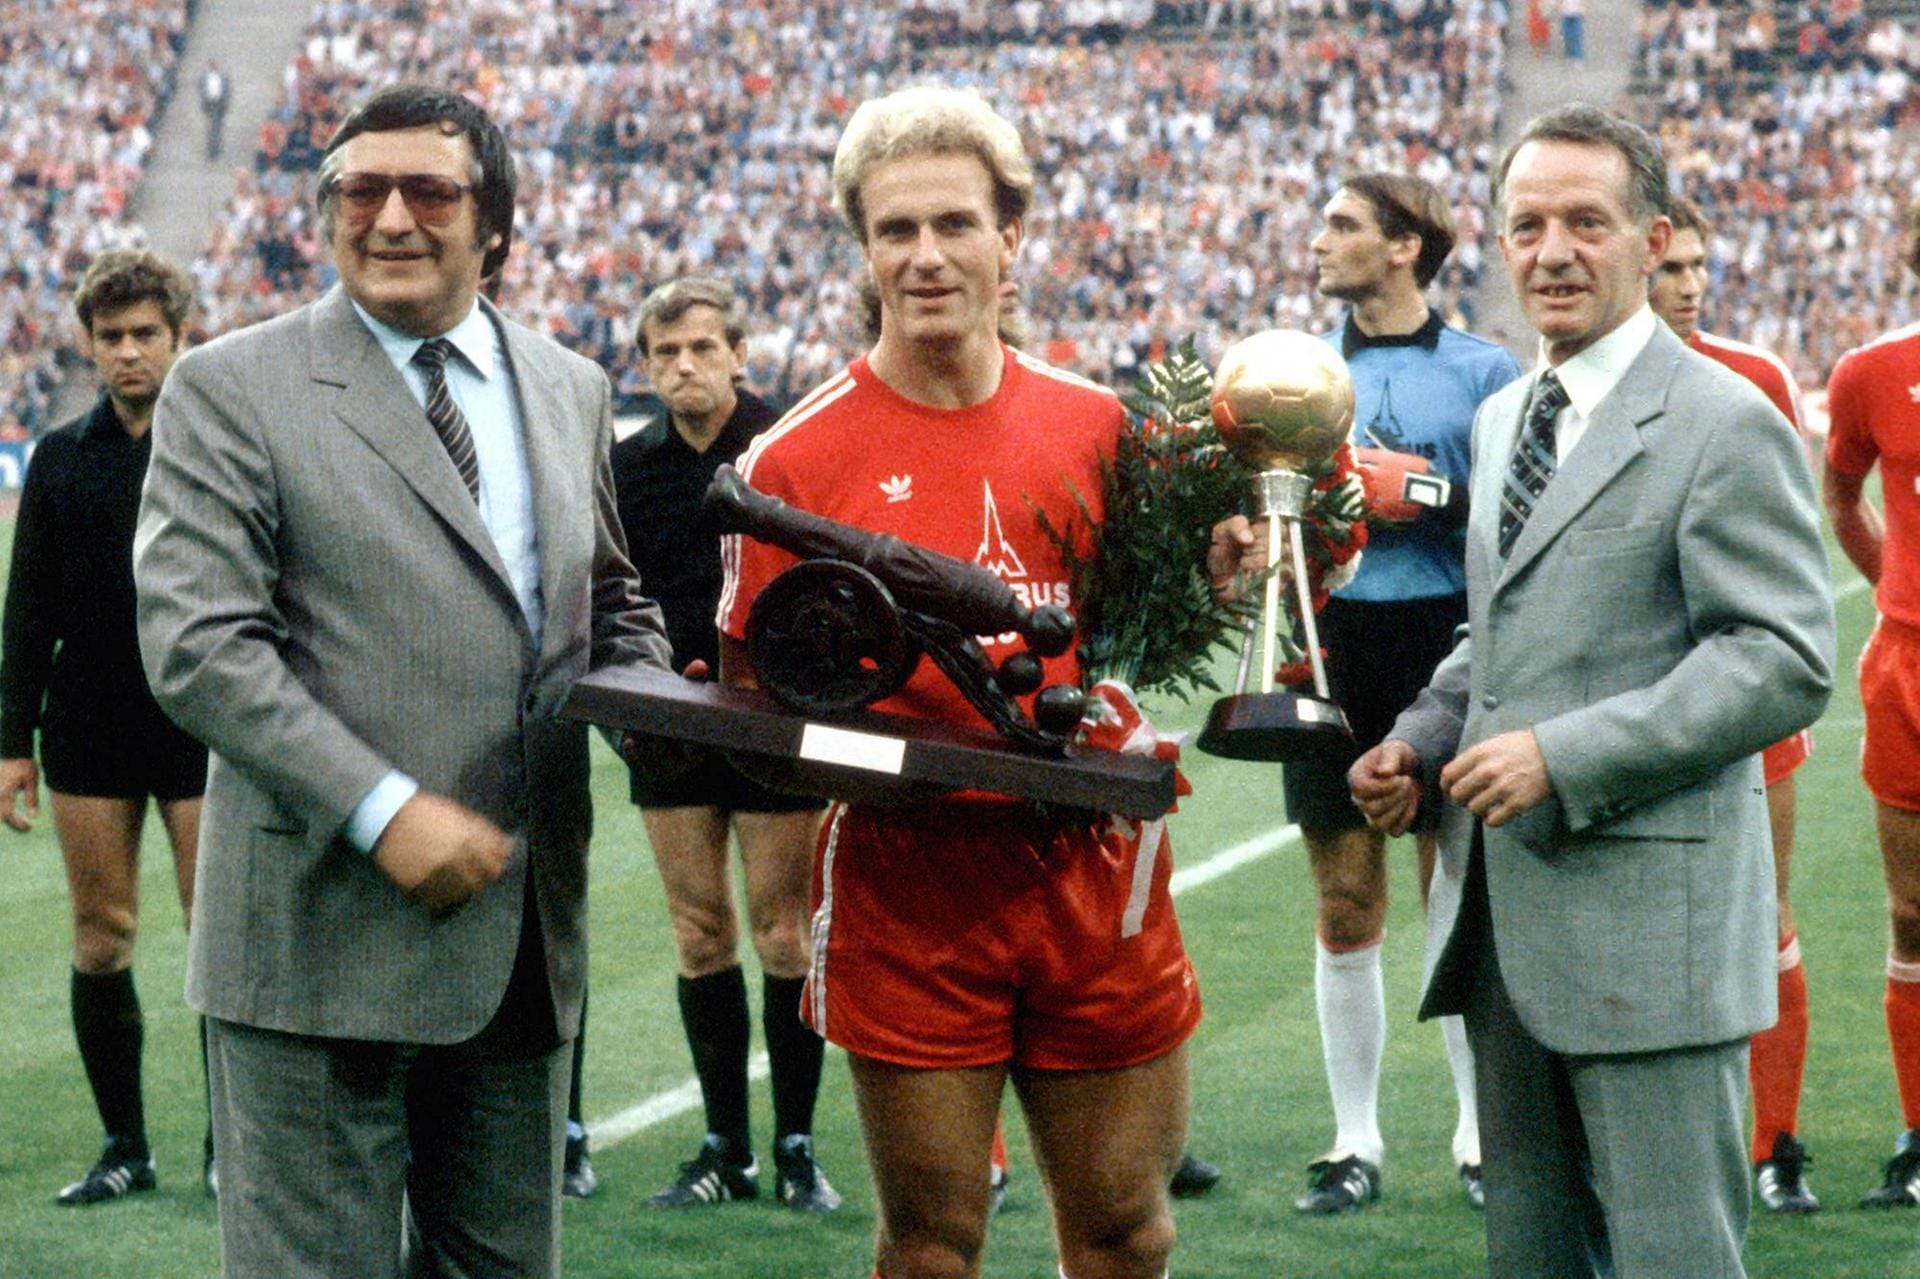 In den 80er-Jahren gilt Rummenigge als einer der besten Spieler der Welt. 1980 gewinnen die Bayern erstmals nach sechs Jahren wieder die Meisterschaft, wobei Rummenigge mit 26 Toren Torschützenkönig wird. Nach dieser Spielzeit wird er zu Deutschlands und Europas Fußballer des Jahres gewählt.